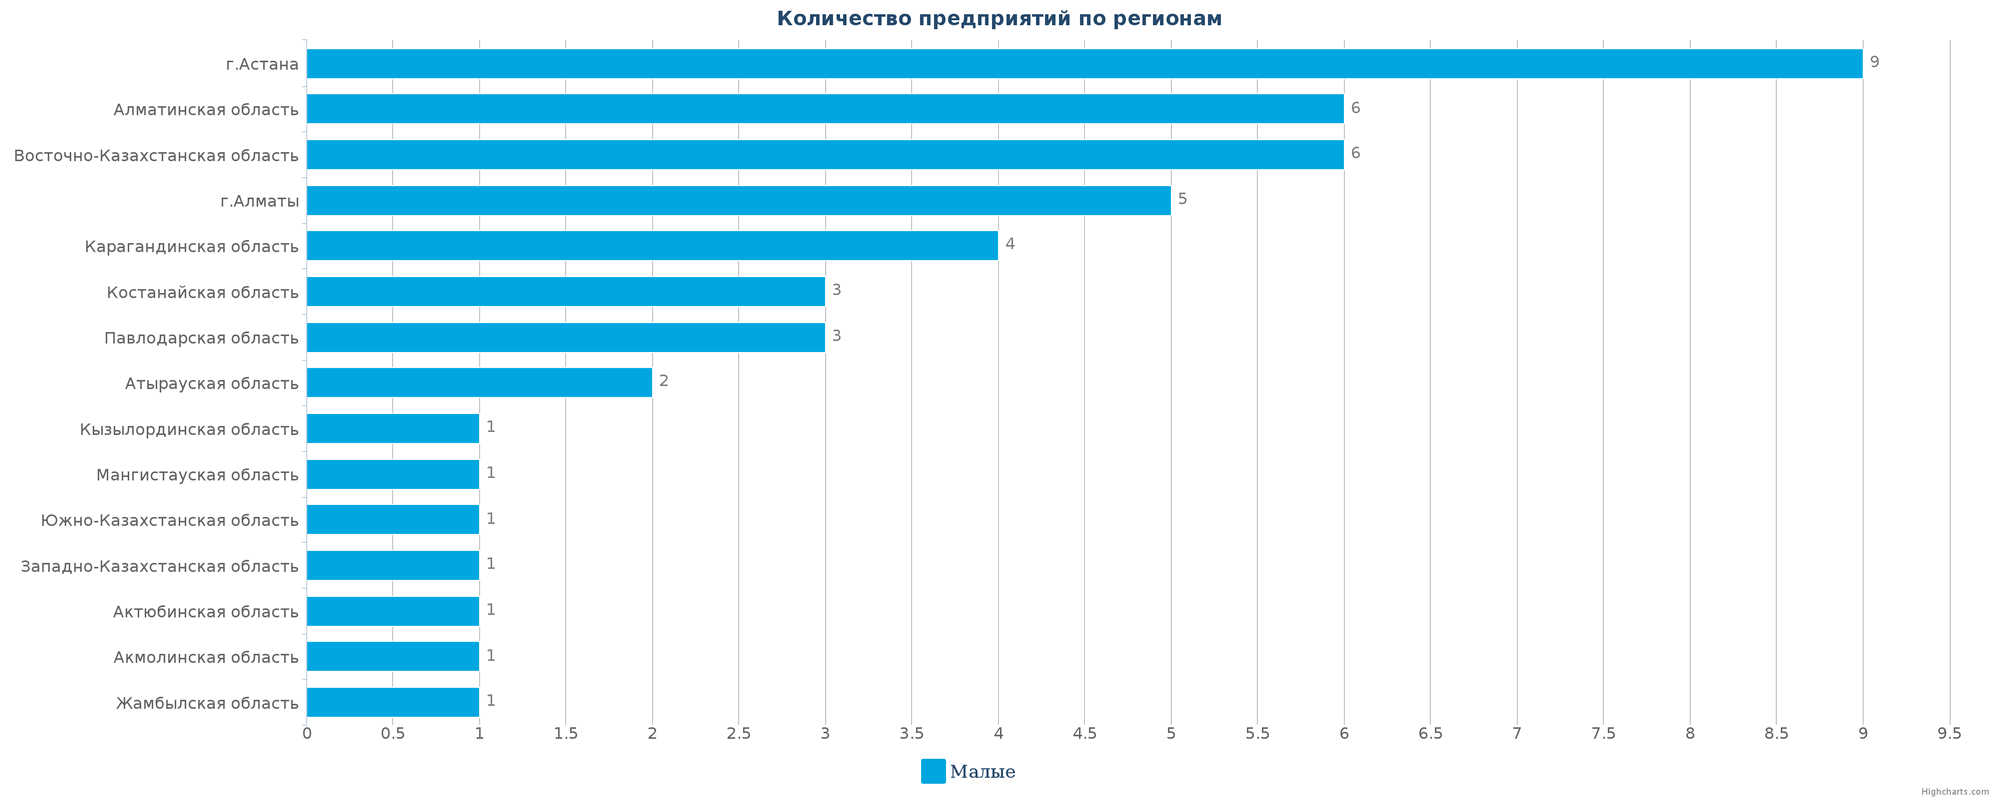 Количество новых промышленных компаний по регионам Казахстана